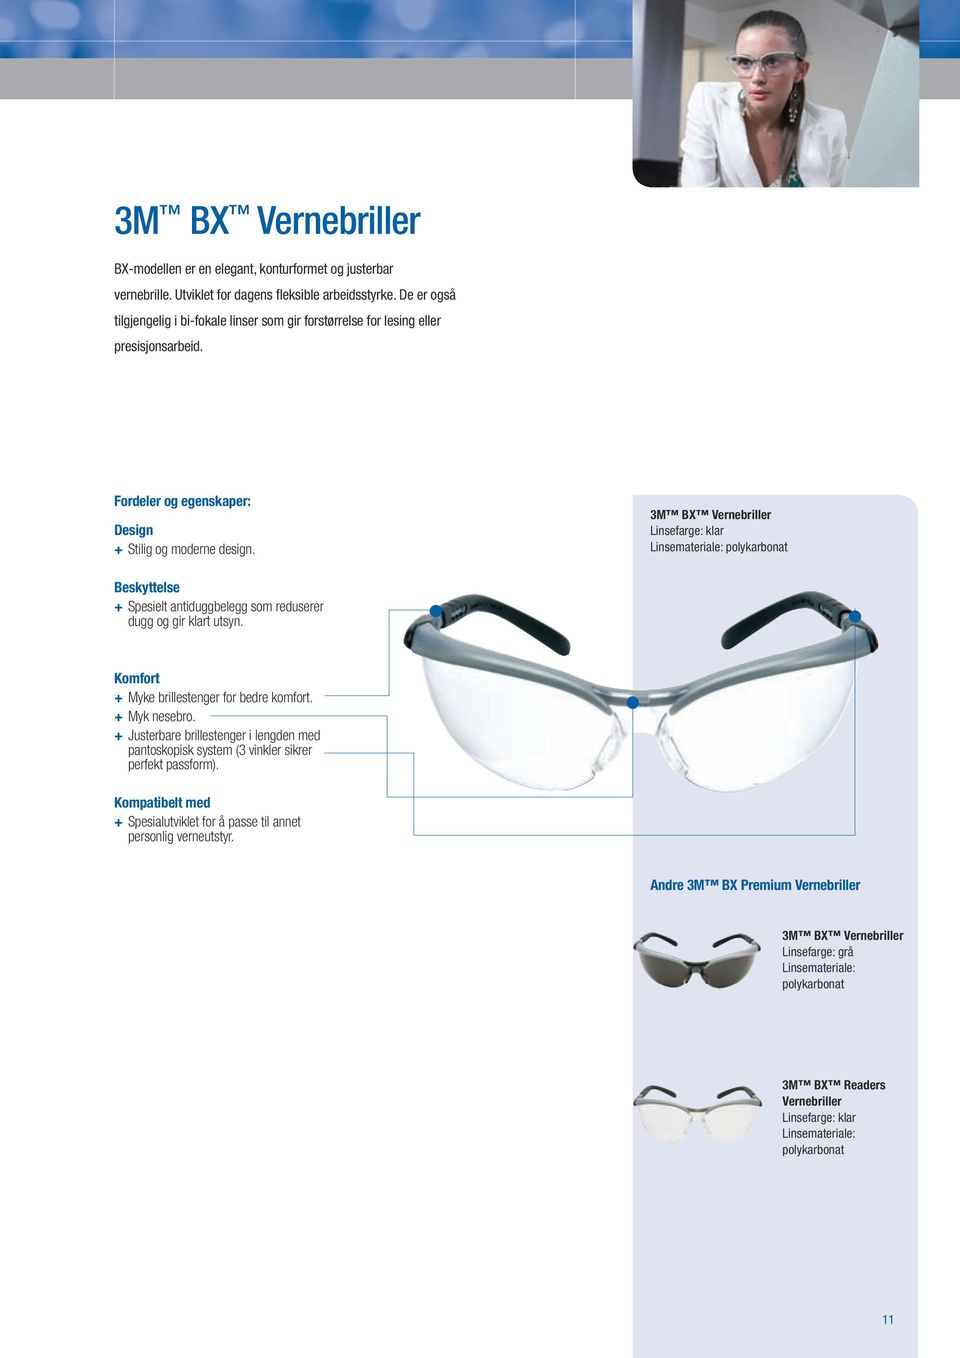 3M B Vernebriller + Spesielt antiduggbelegg som reduserer dugg og gir klart utsyn. + Myke brillestenger for bedre komfort. + Myk nesebro.